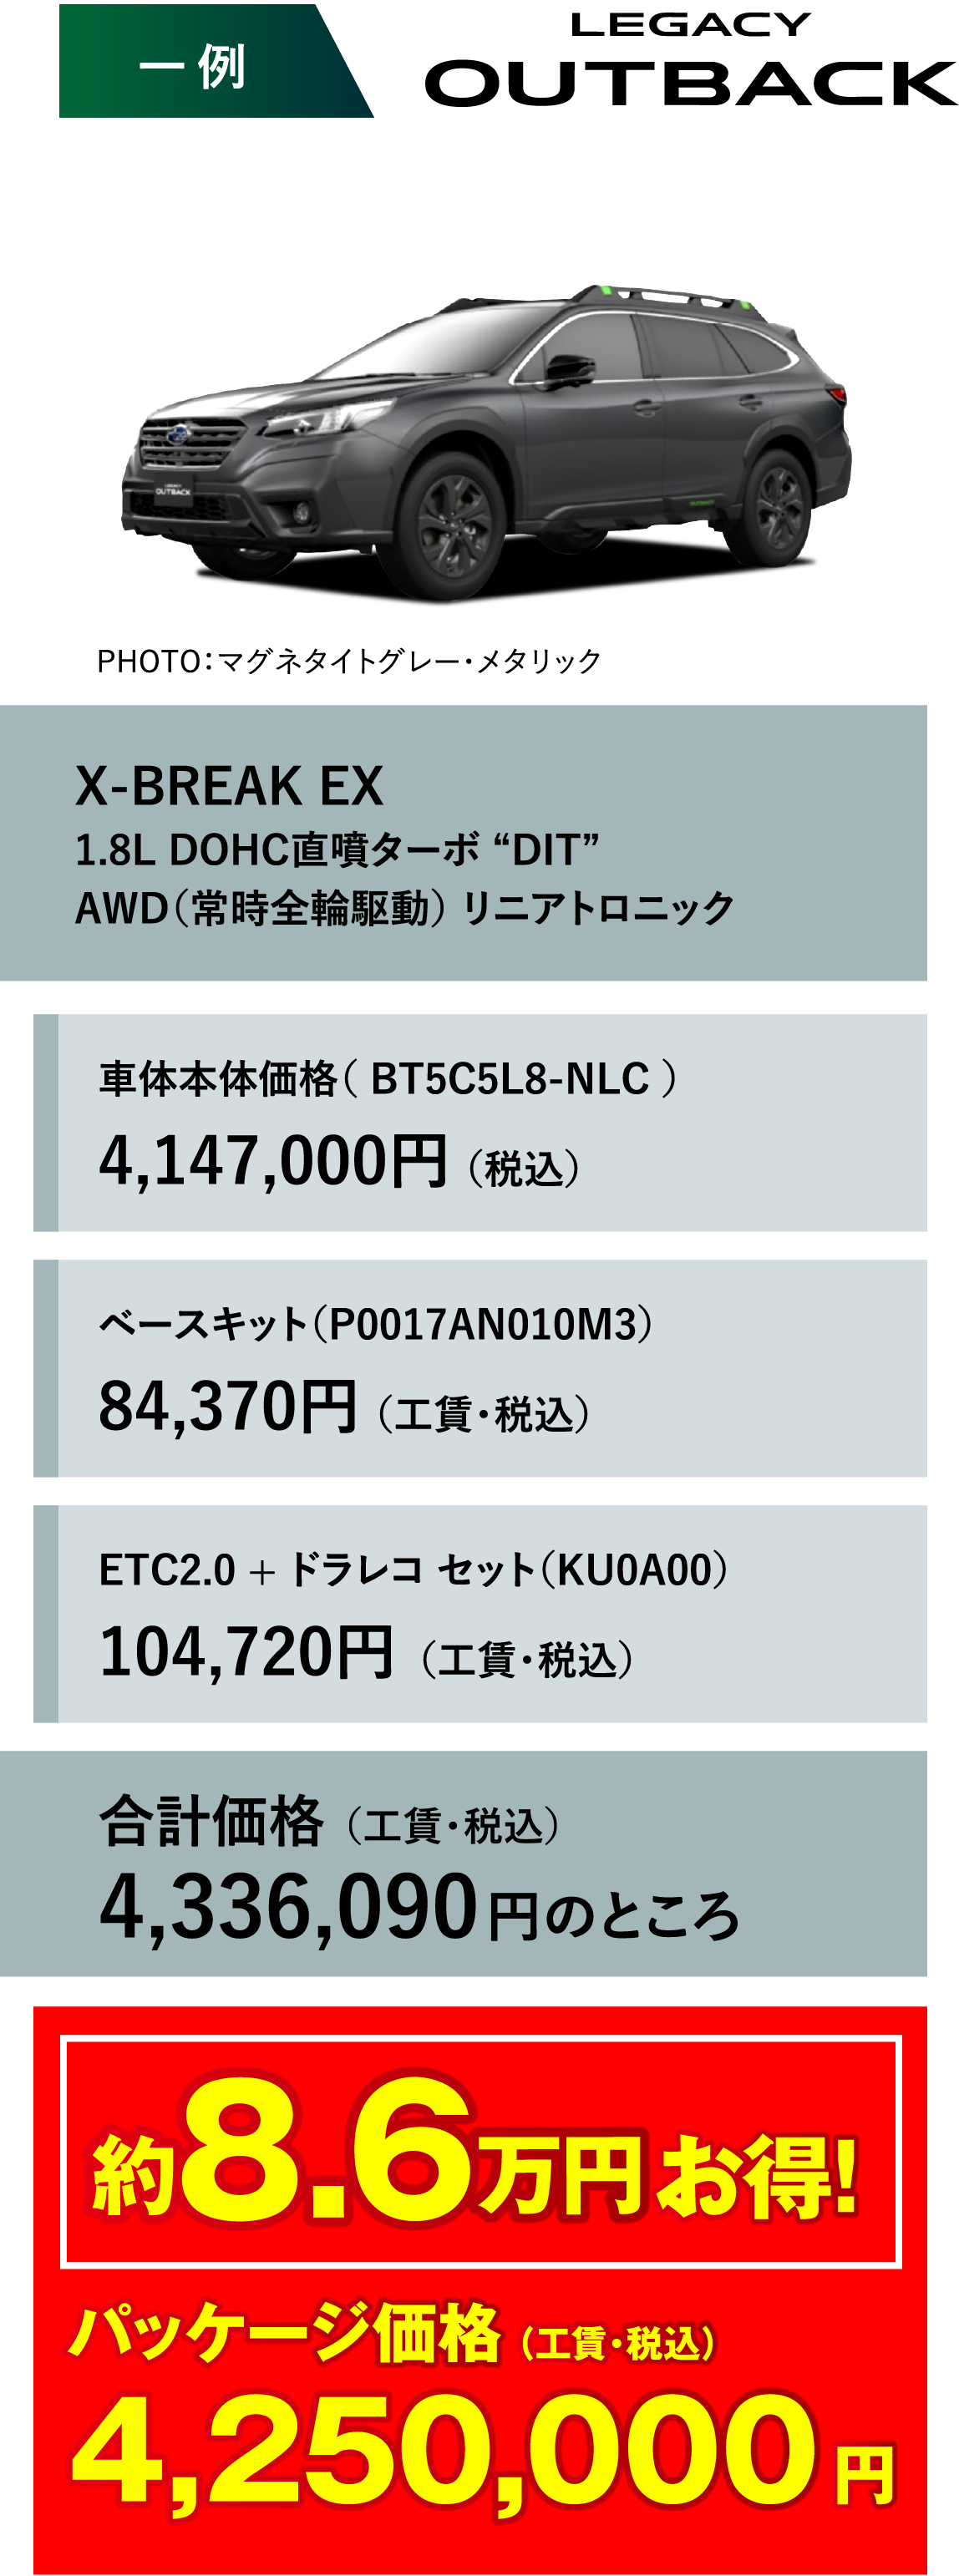 一例 OUTBACK PHOTO：マグネタイトグレー・メタリック X-BREAK EX 1.8L DOHC直噴ターボ “DIT”AWD（常時全輪駆動） リニアトロニック 車体本体価格（ BT5C5L8-NLC ）4,147,000円（税込） ベースキット（P0017AN010M3）84,370円（工賃・税込）ETC2.0 + ドラレコ セット（KU0A00）104,720円（工賃・税込）合計価格4,336,090円のところ 約8.6万円お得!パッケージ価格（工賃・税込）4,250,000円